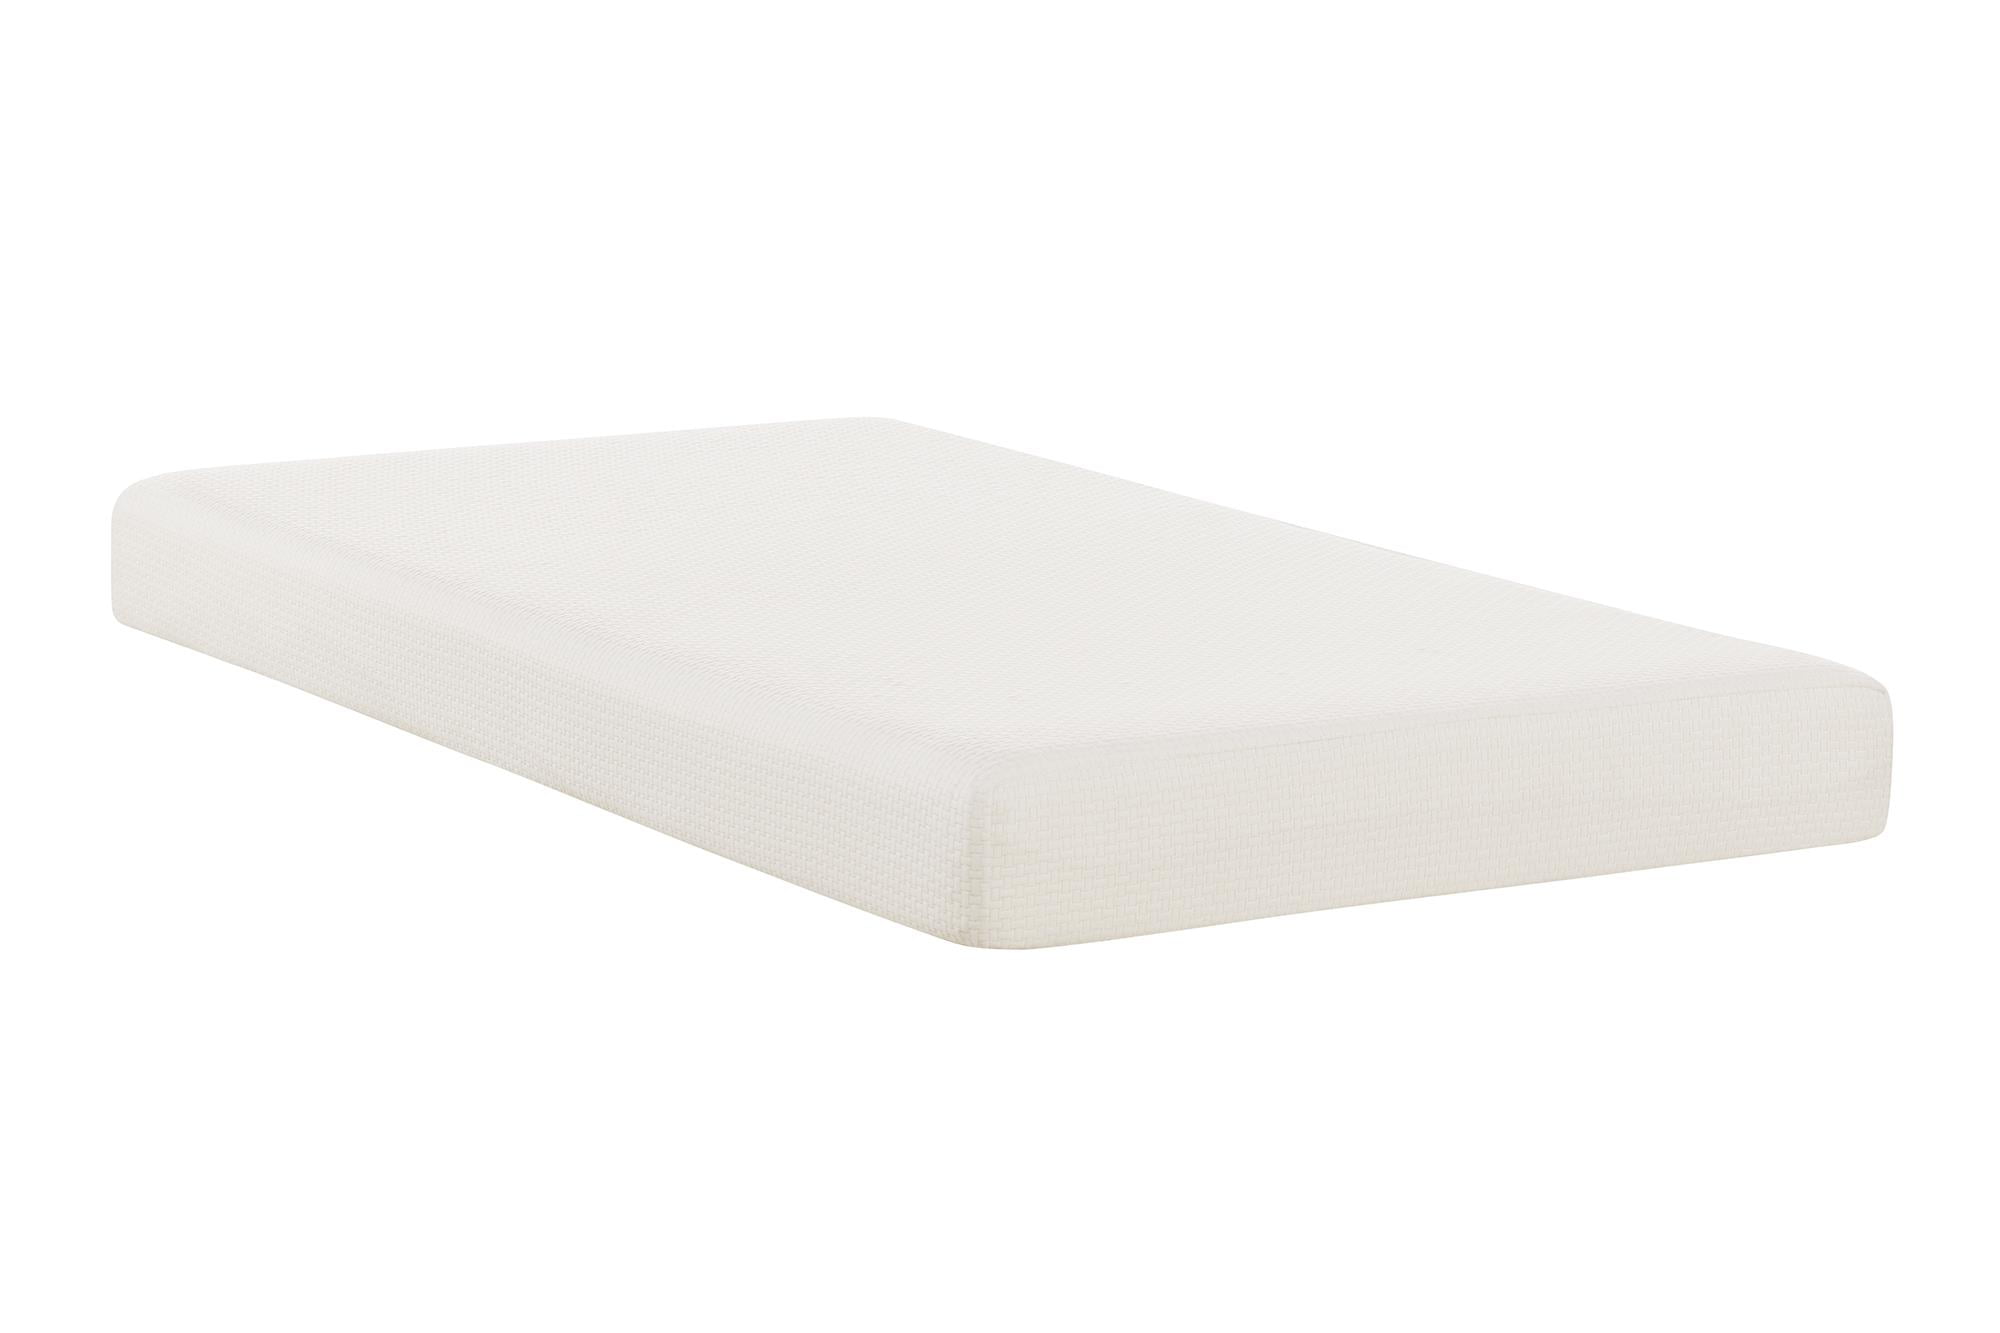 6in memory foam mattress topper